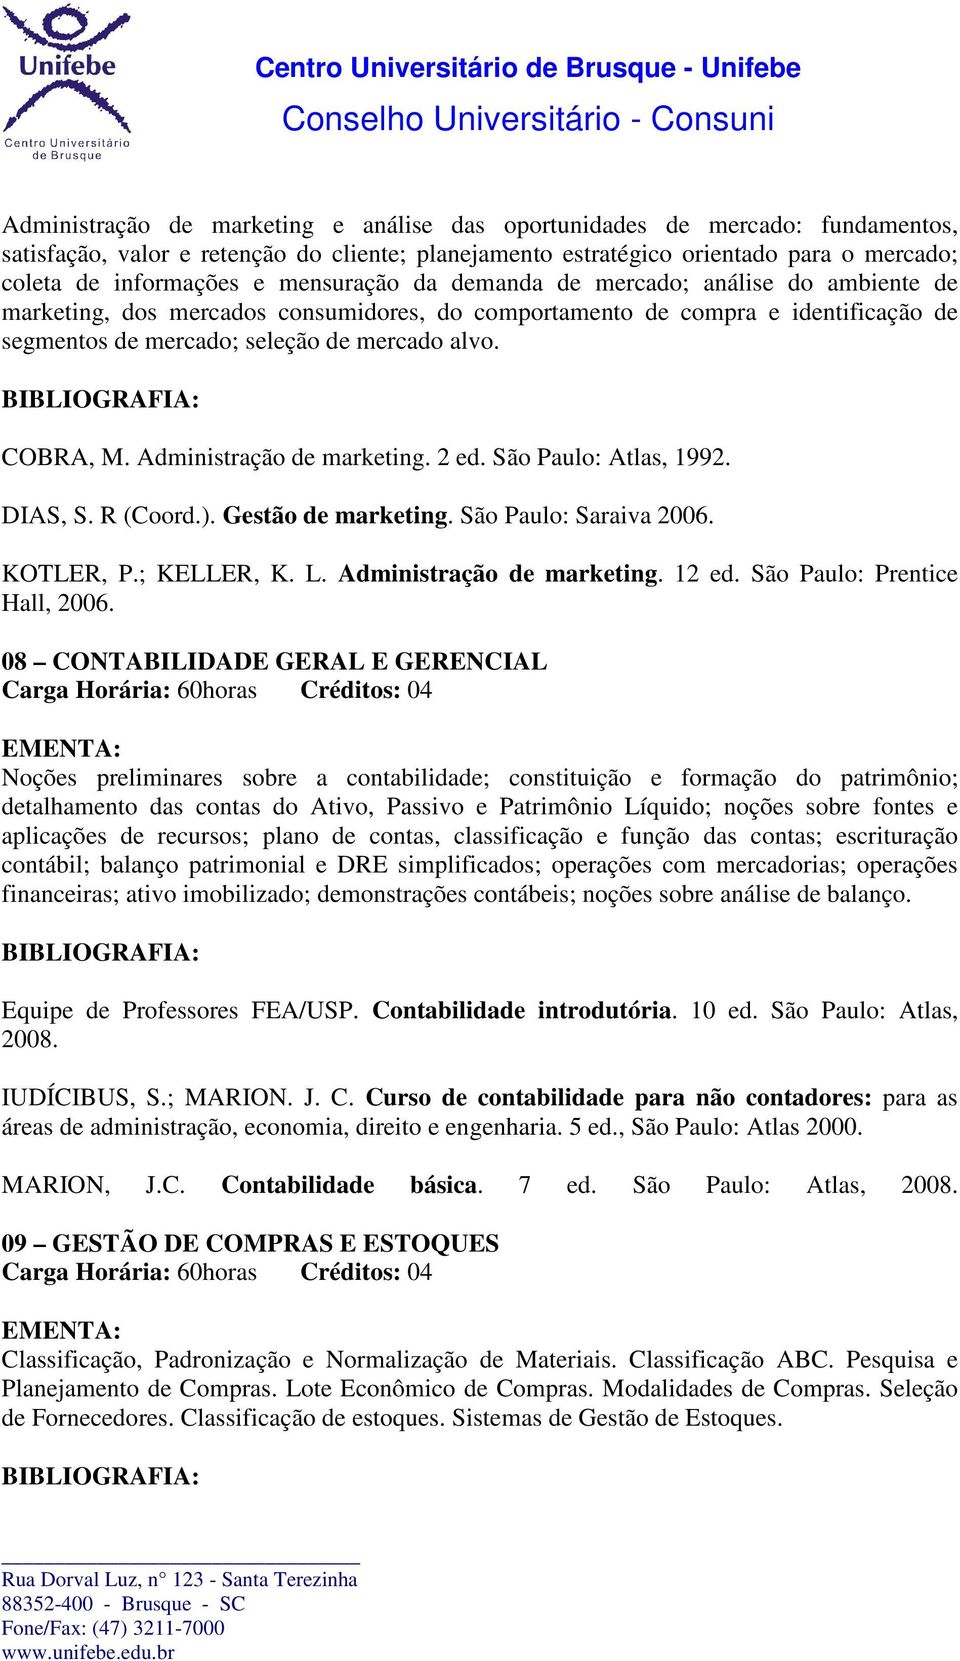 Administração de marketing. 2 ed. São Paulo: Atlas, 1992. DIAS, S. R (Coord.). Gestão de marketing. São Paulo: Saraiva 2006. KOTLER, P.; KELLER, K. L. Administração de marketing. 12 ed.